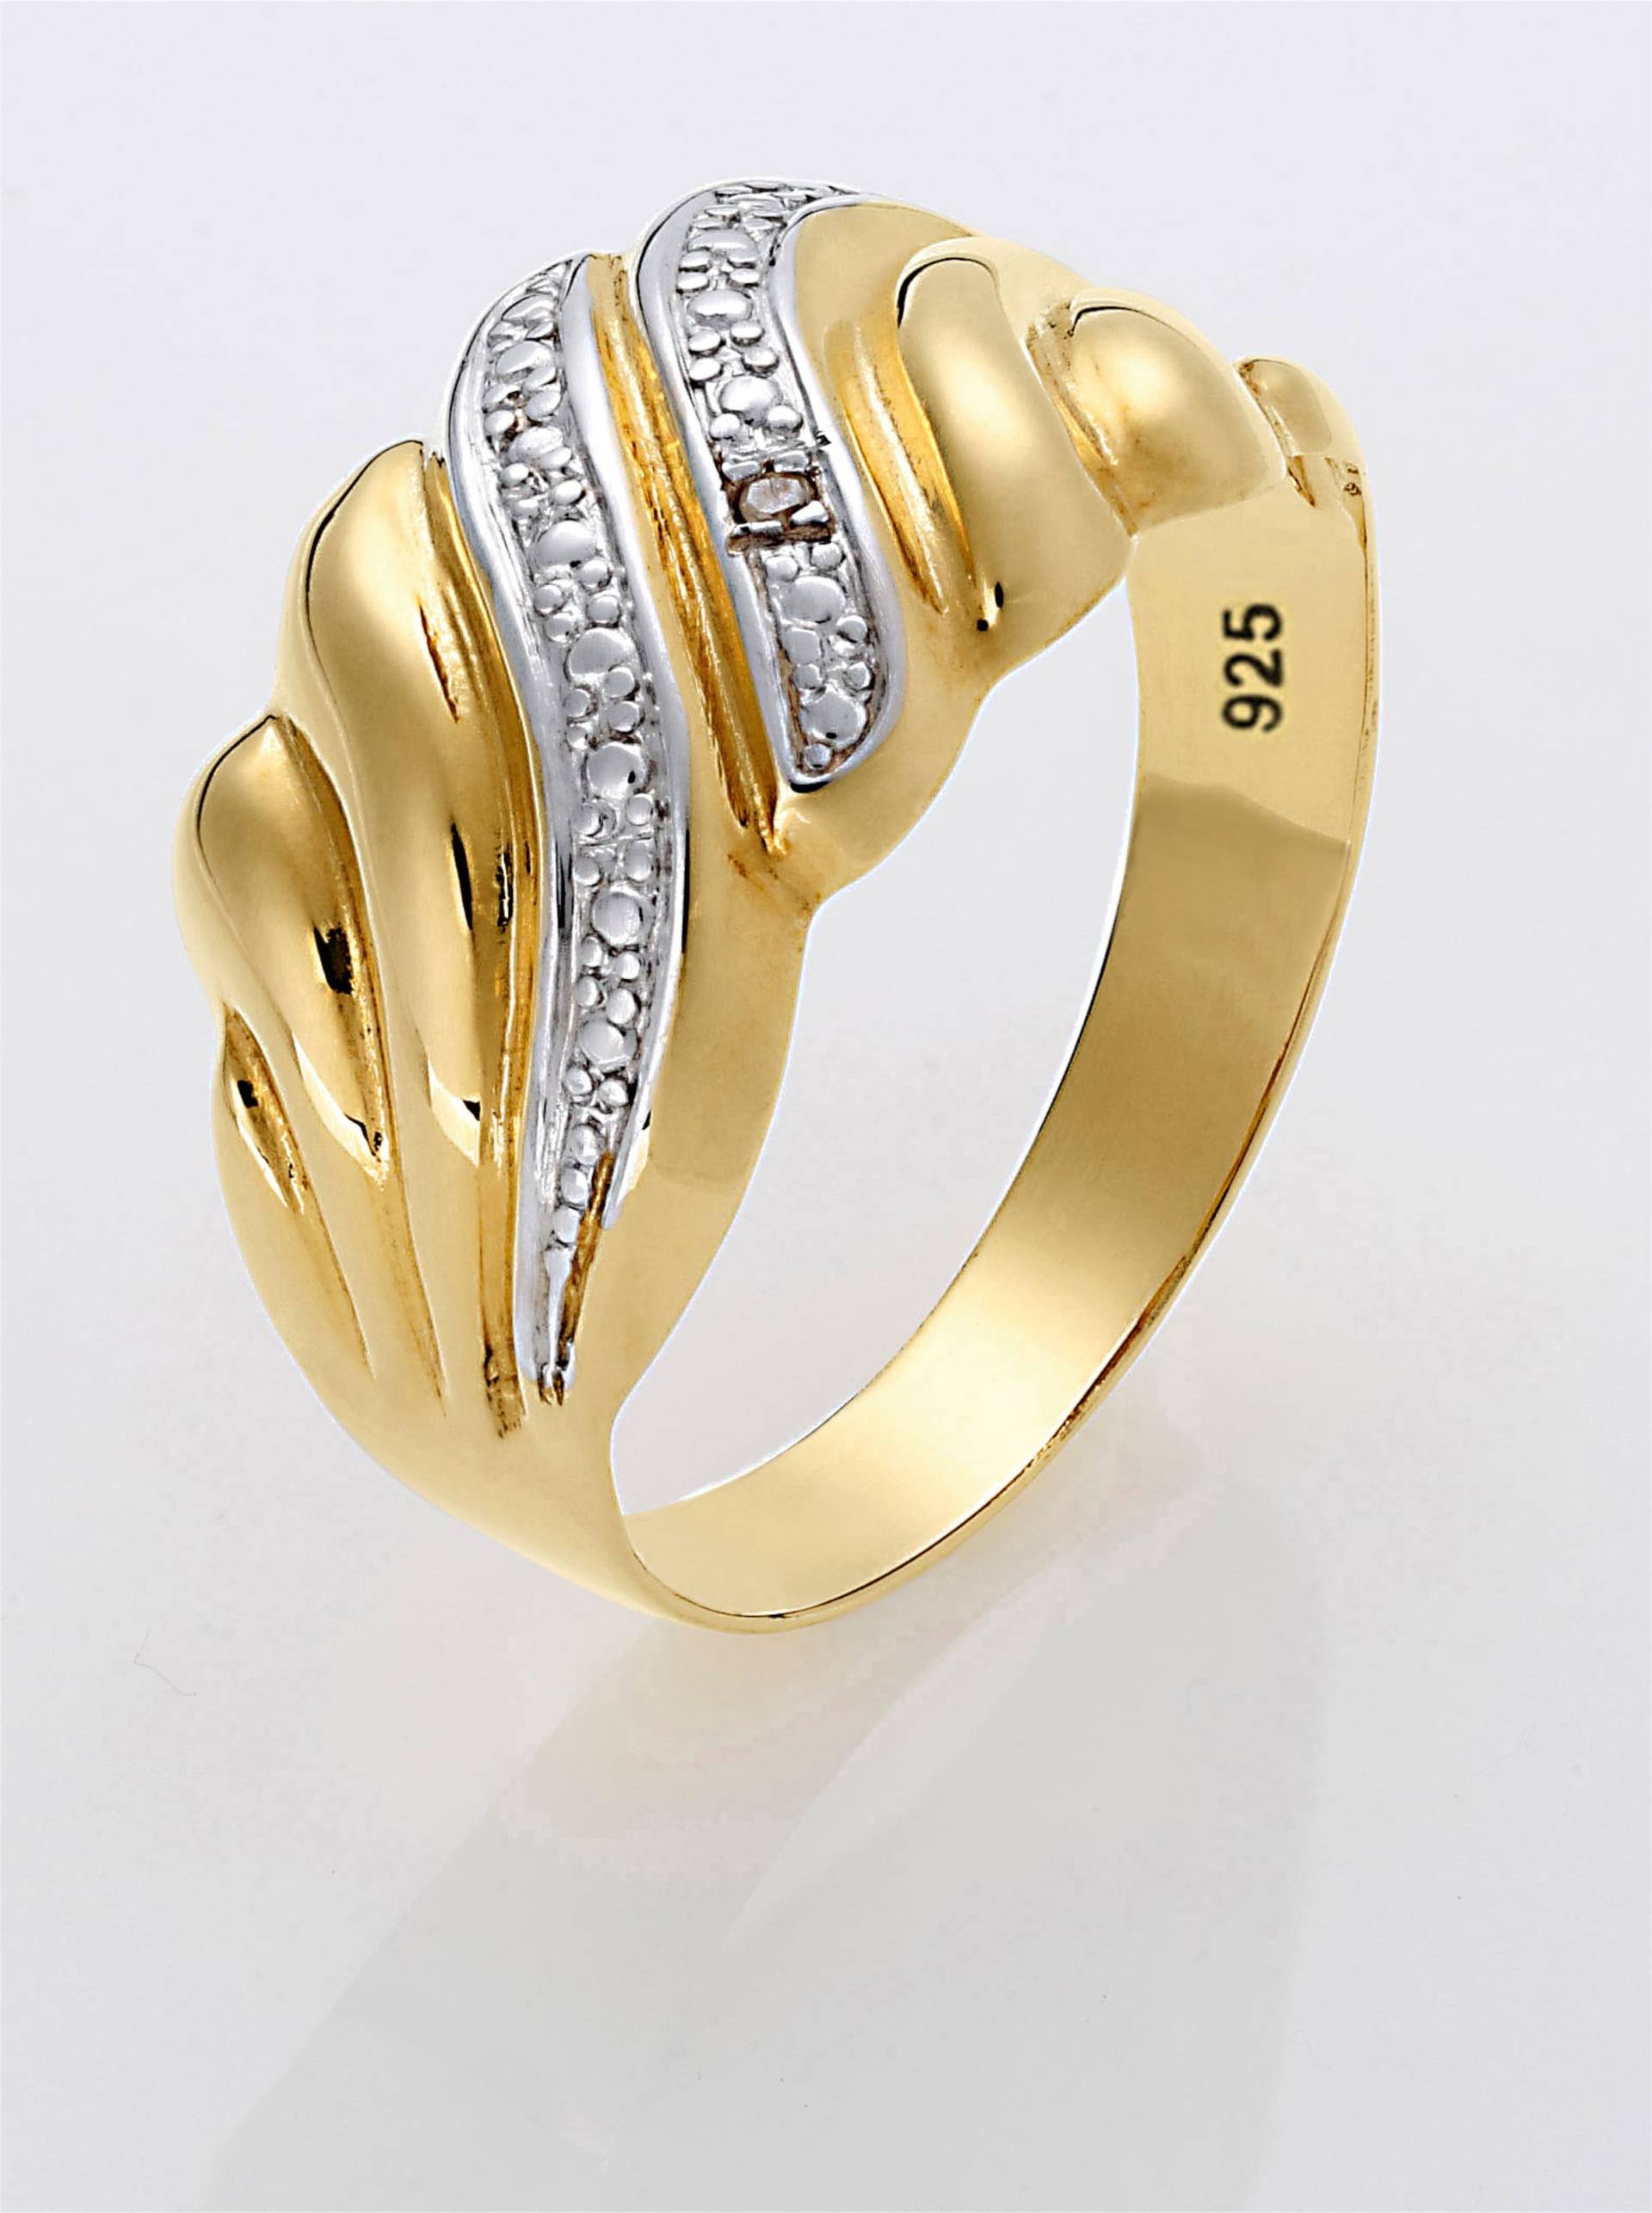 Ring in Silber vergoldet 925 von heine